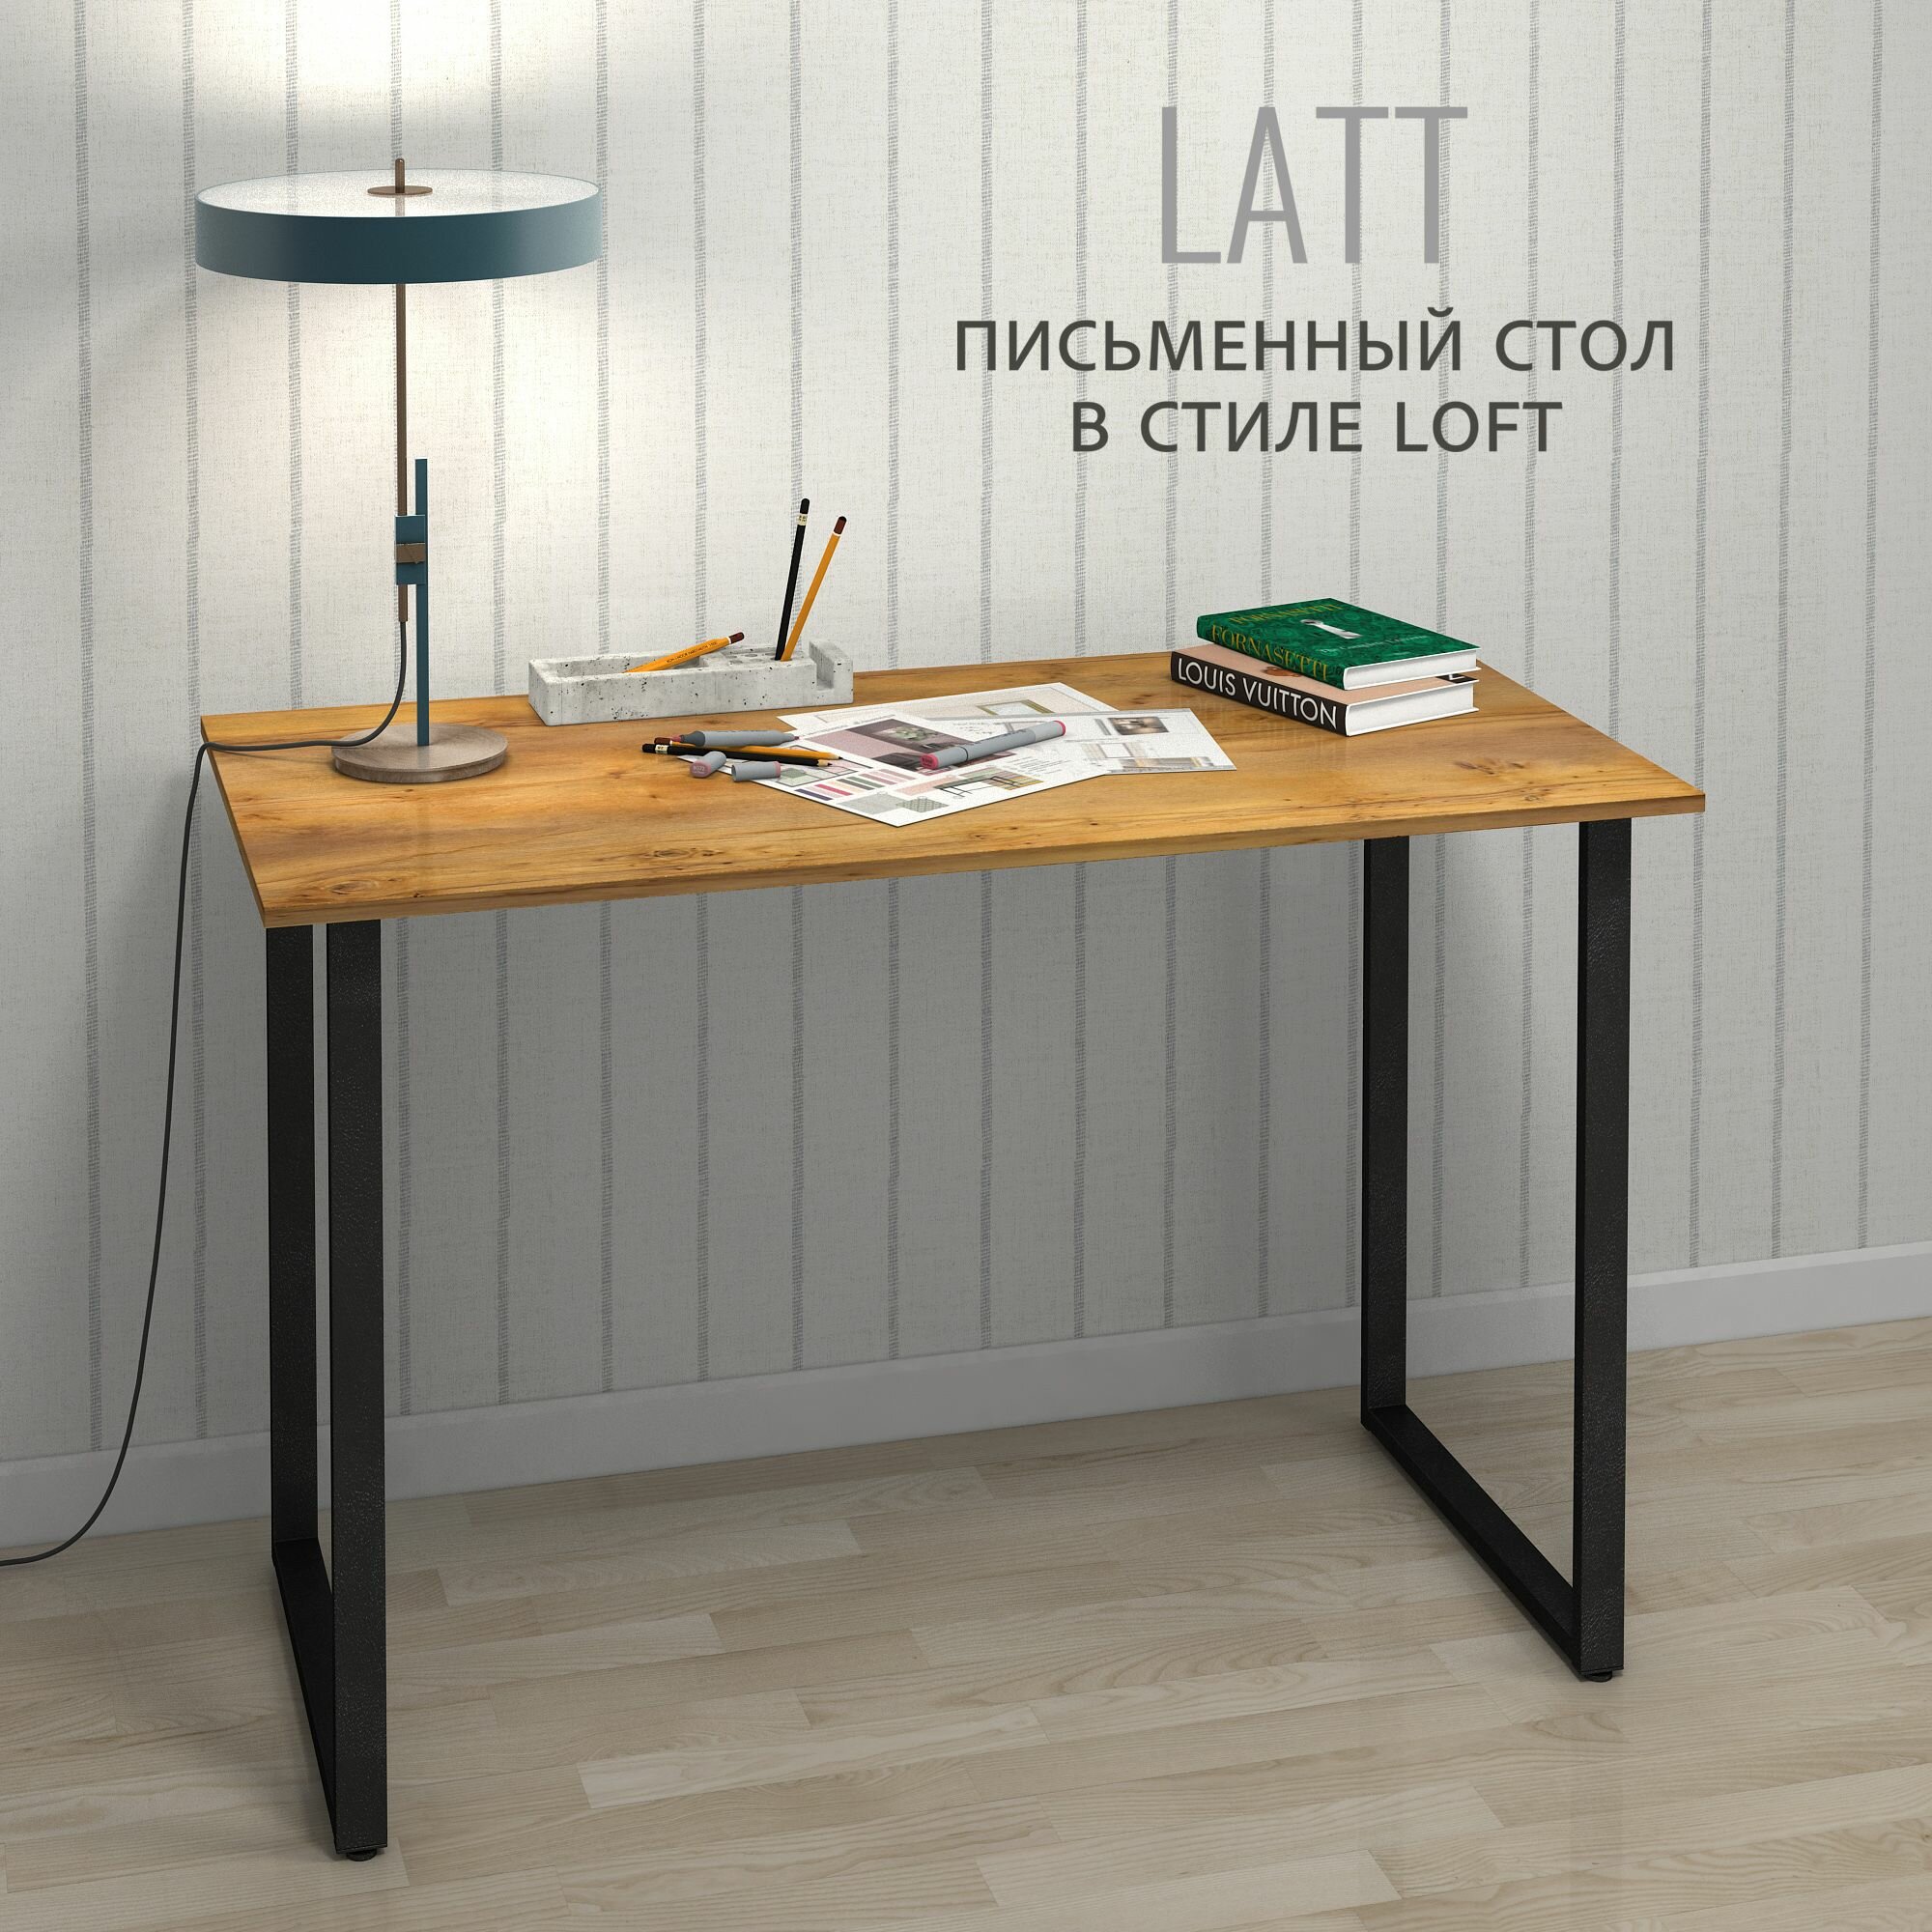 Стол письменный LATT max, коричневый, компьютерный, офисный, обеденный 110х55х75 см, гростат